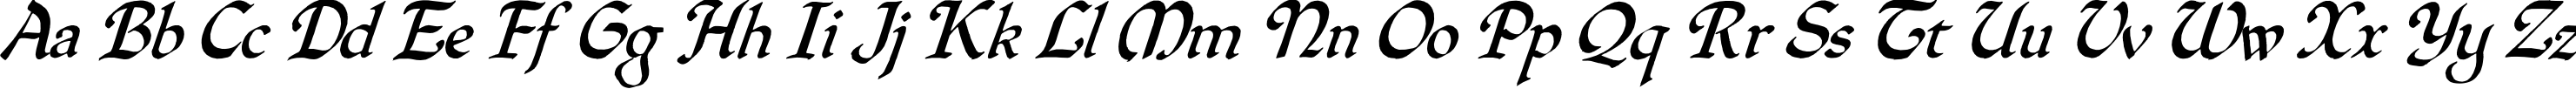 Пример написания английского алфавита шрифтом QuillOblique